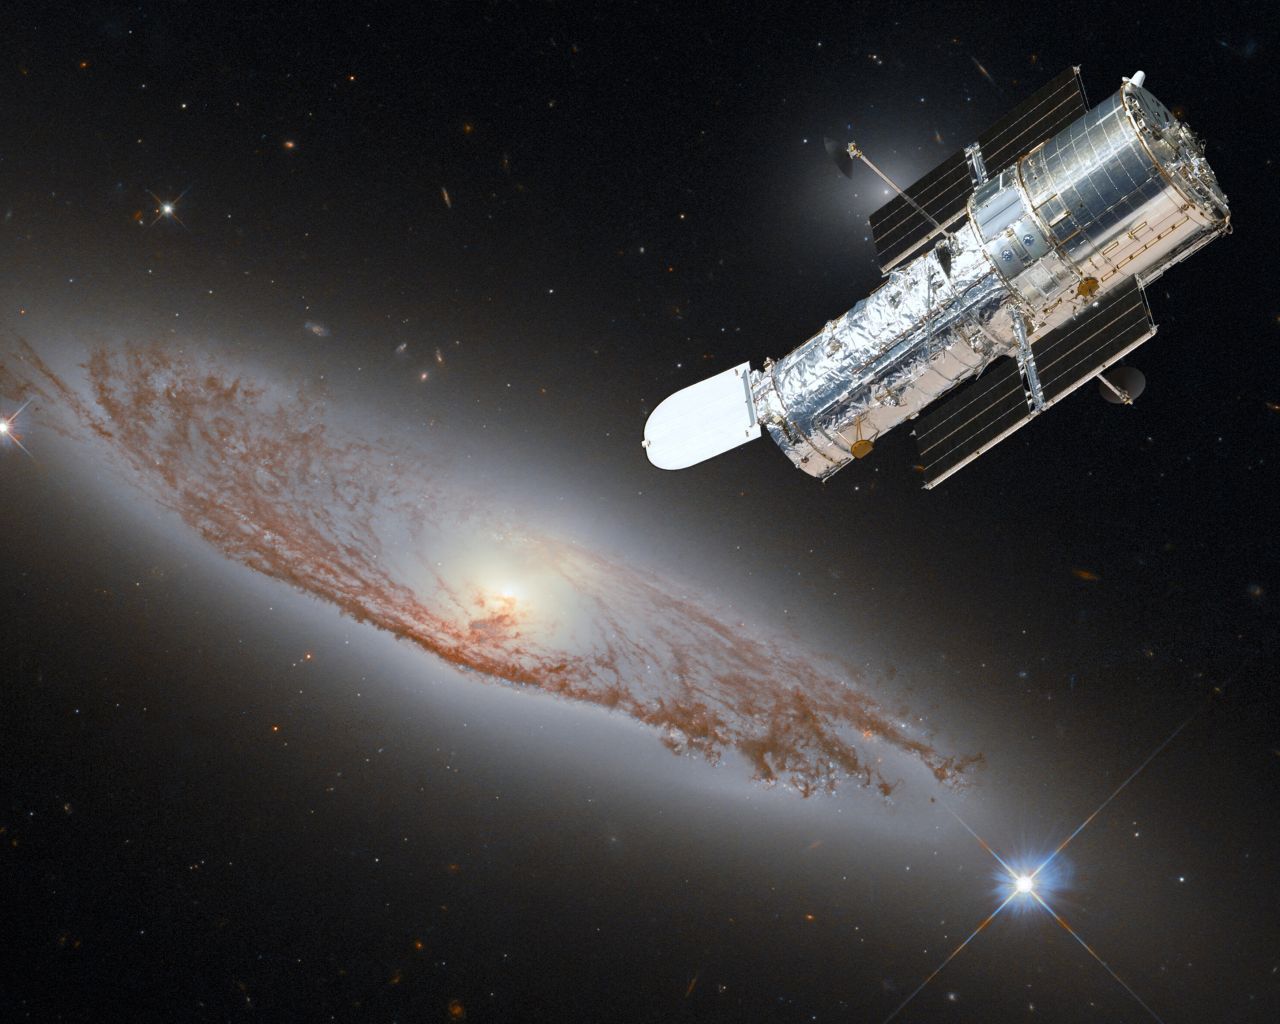 Das Weltraumteleskop "Hubble" war lange Zeit der Superstar im All, allerdings mit Allüren. Erst sorgte ein fehlerhafter Spiegel für Entsetzen - immerhin sein Herzstück. Dann drohte das Teleskop abzustürzen. Beide Probleme konnte die NASA lösen. Zwischendurch lieferte Hubble sensationelle Aufnahmen von Galaxien (hier die Spiralgalaxie NGC 5037) und anderen exotischen Himmelskörpern.